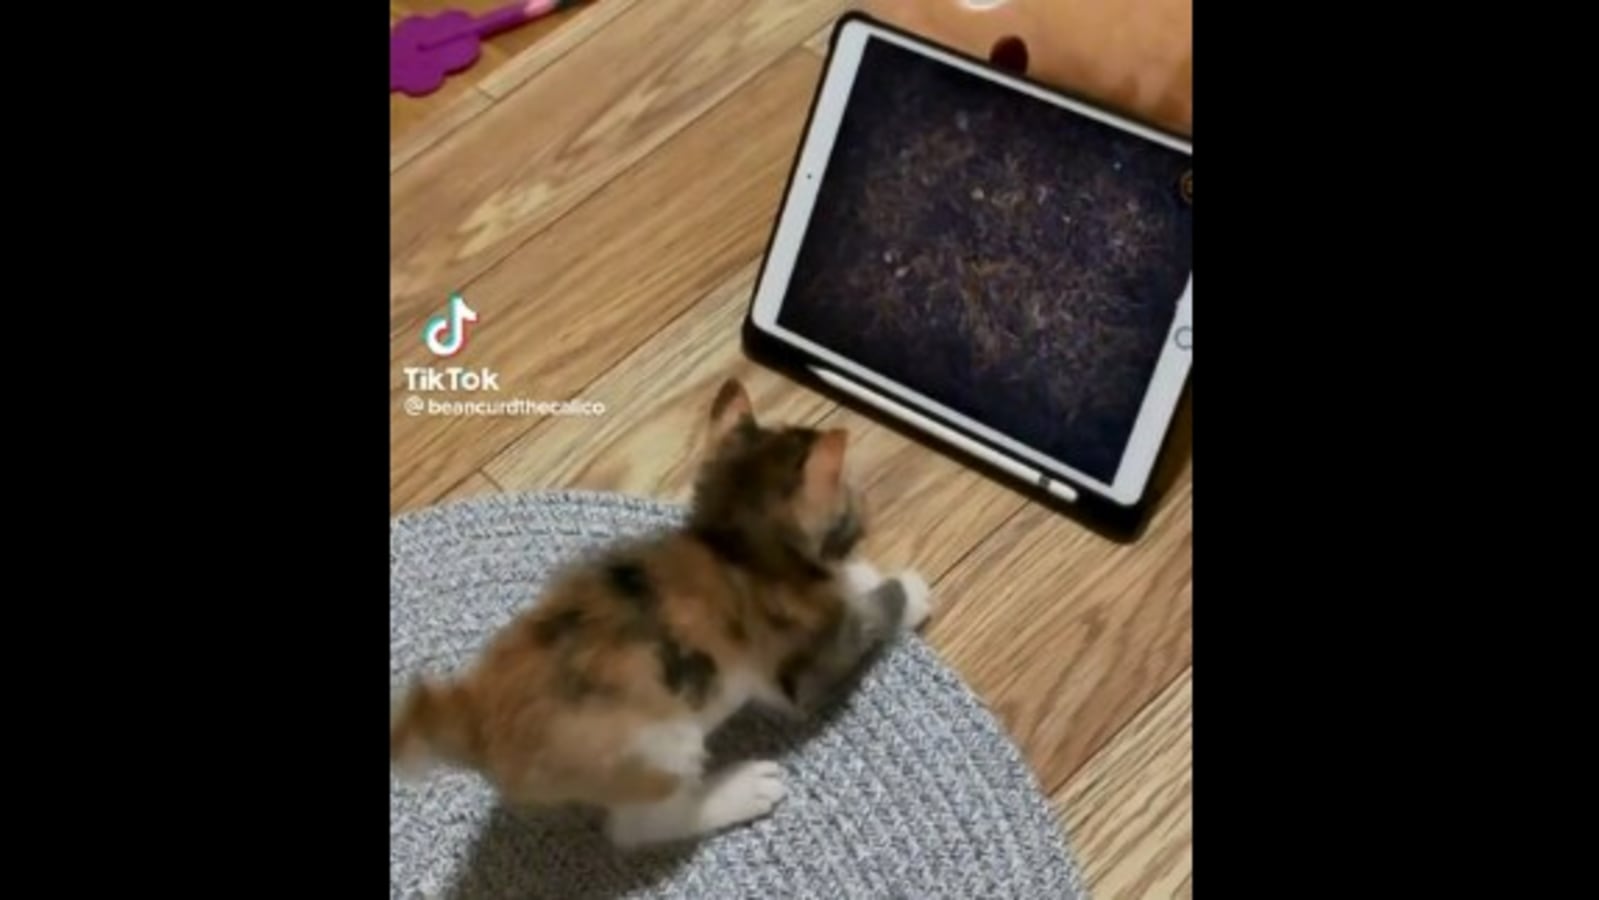 Gatos brincando com iPad viram mania na Internet